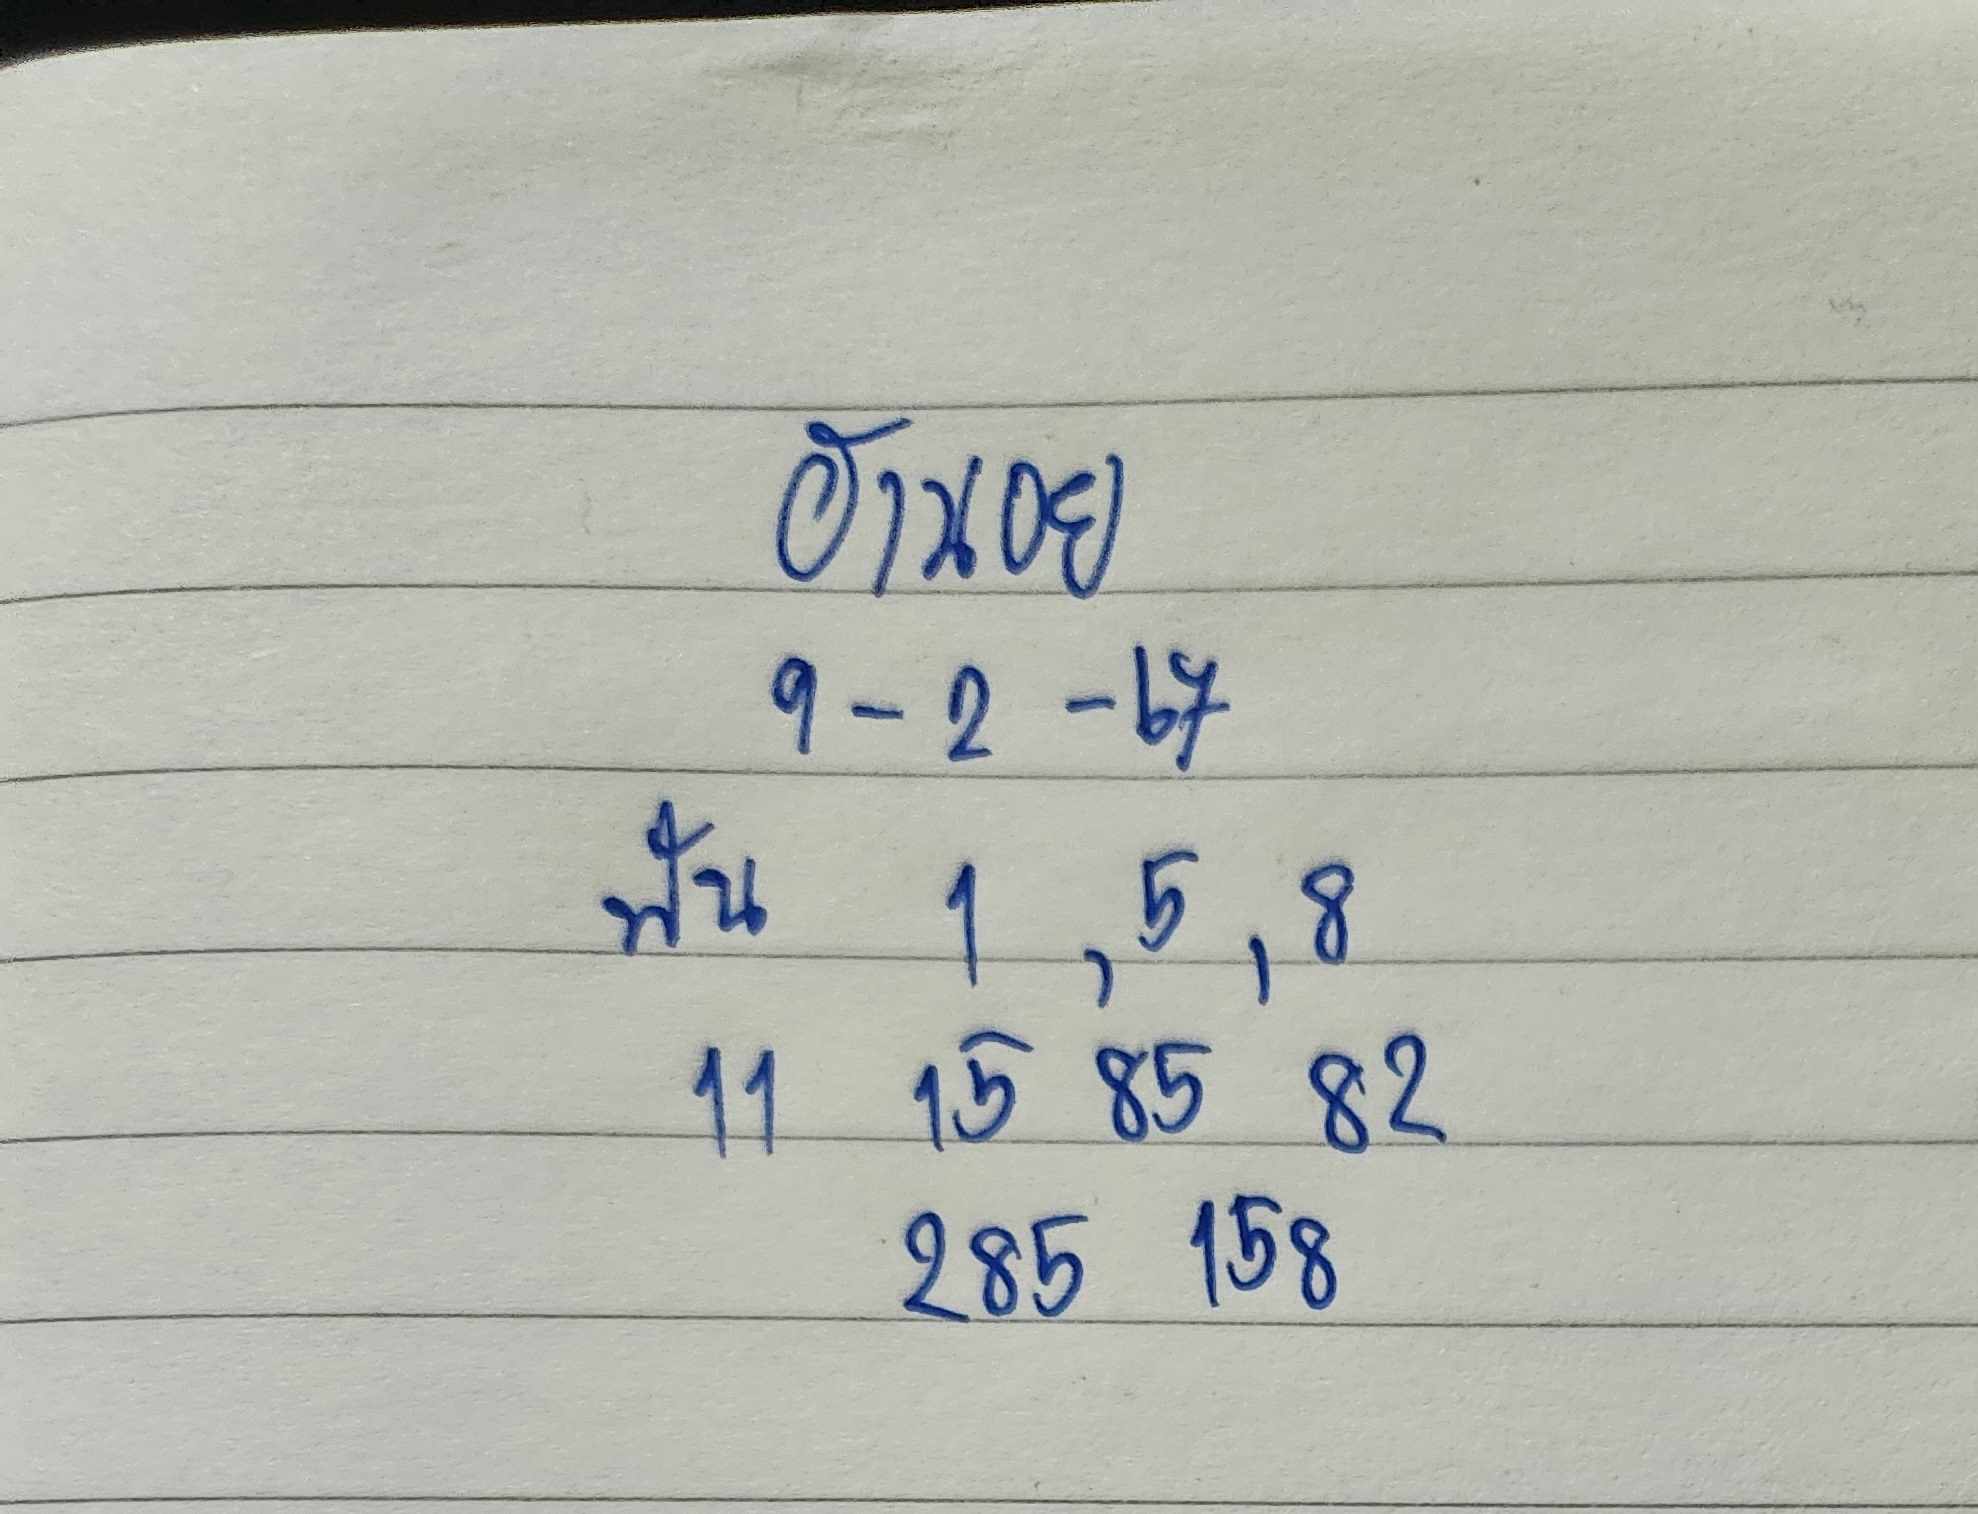 เลขเด็ดฮานอย 9-2-67